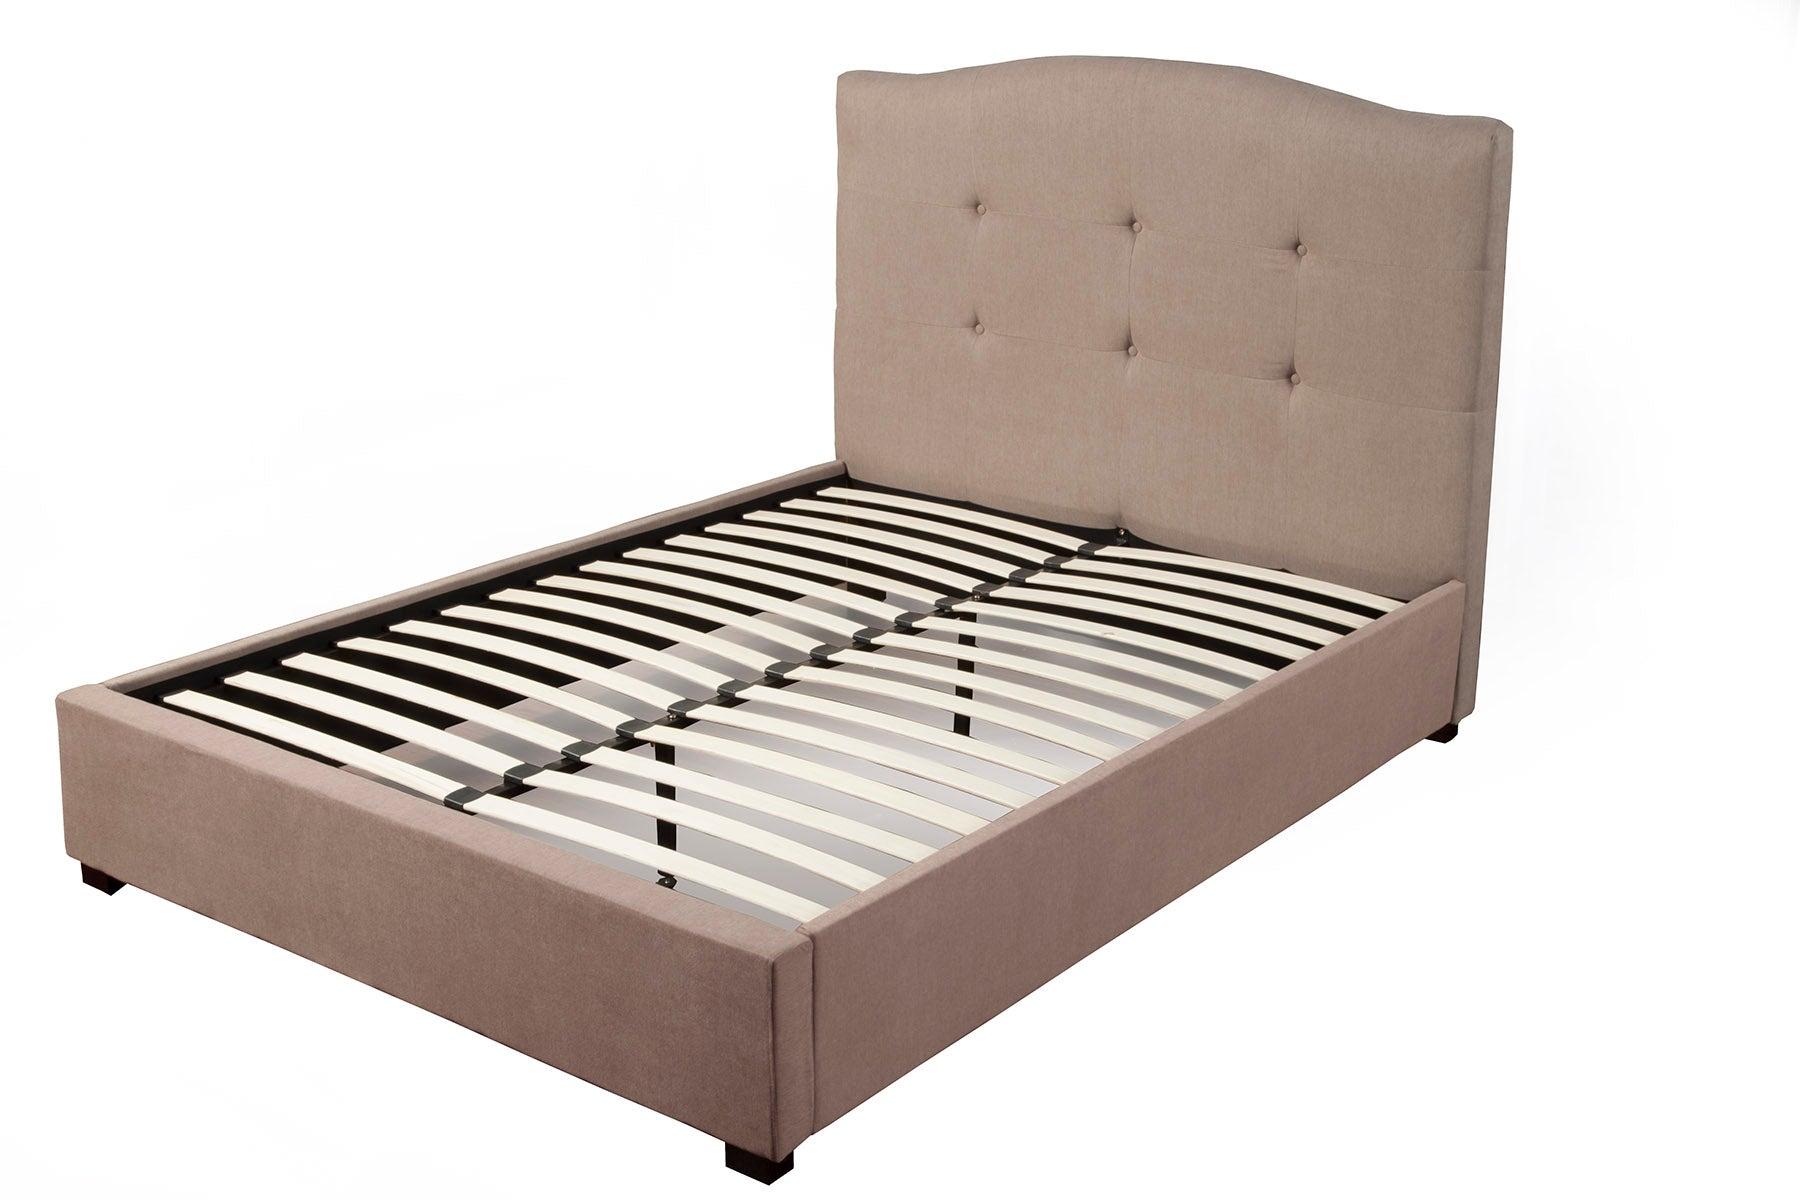 

    
Haskett/Jute Full Tufted Upholstered Bed Amanda ALPINE Modern Contemporary
